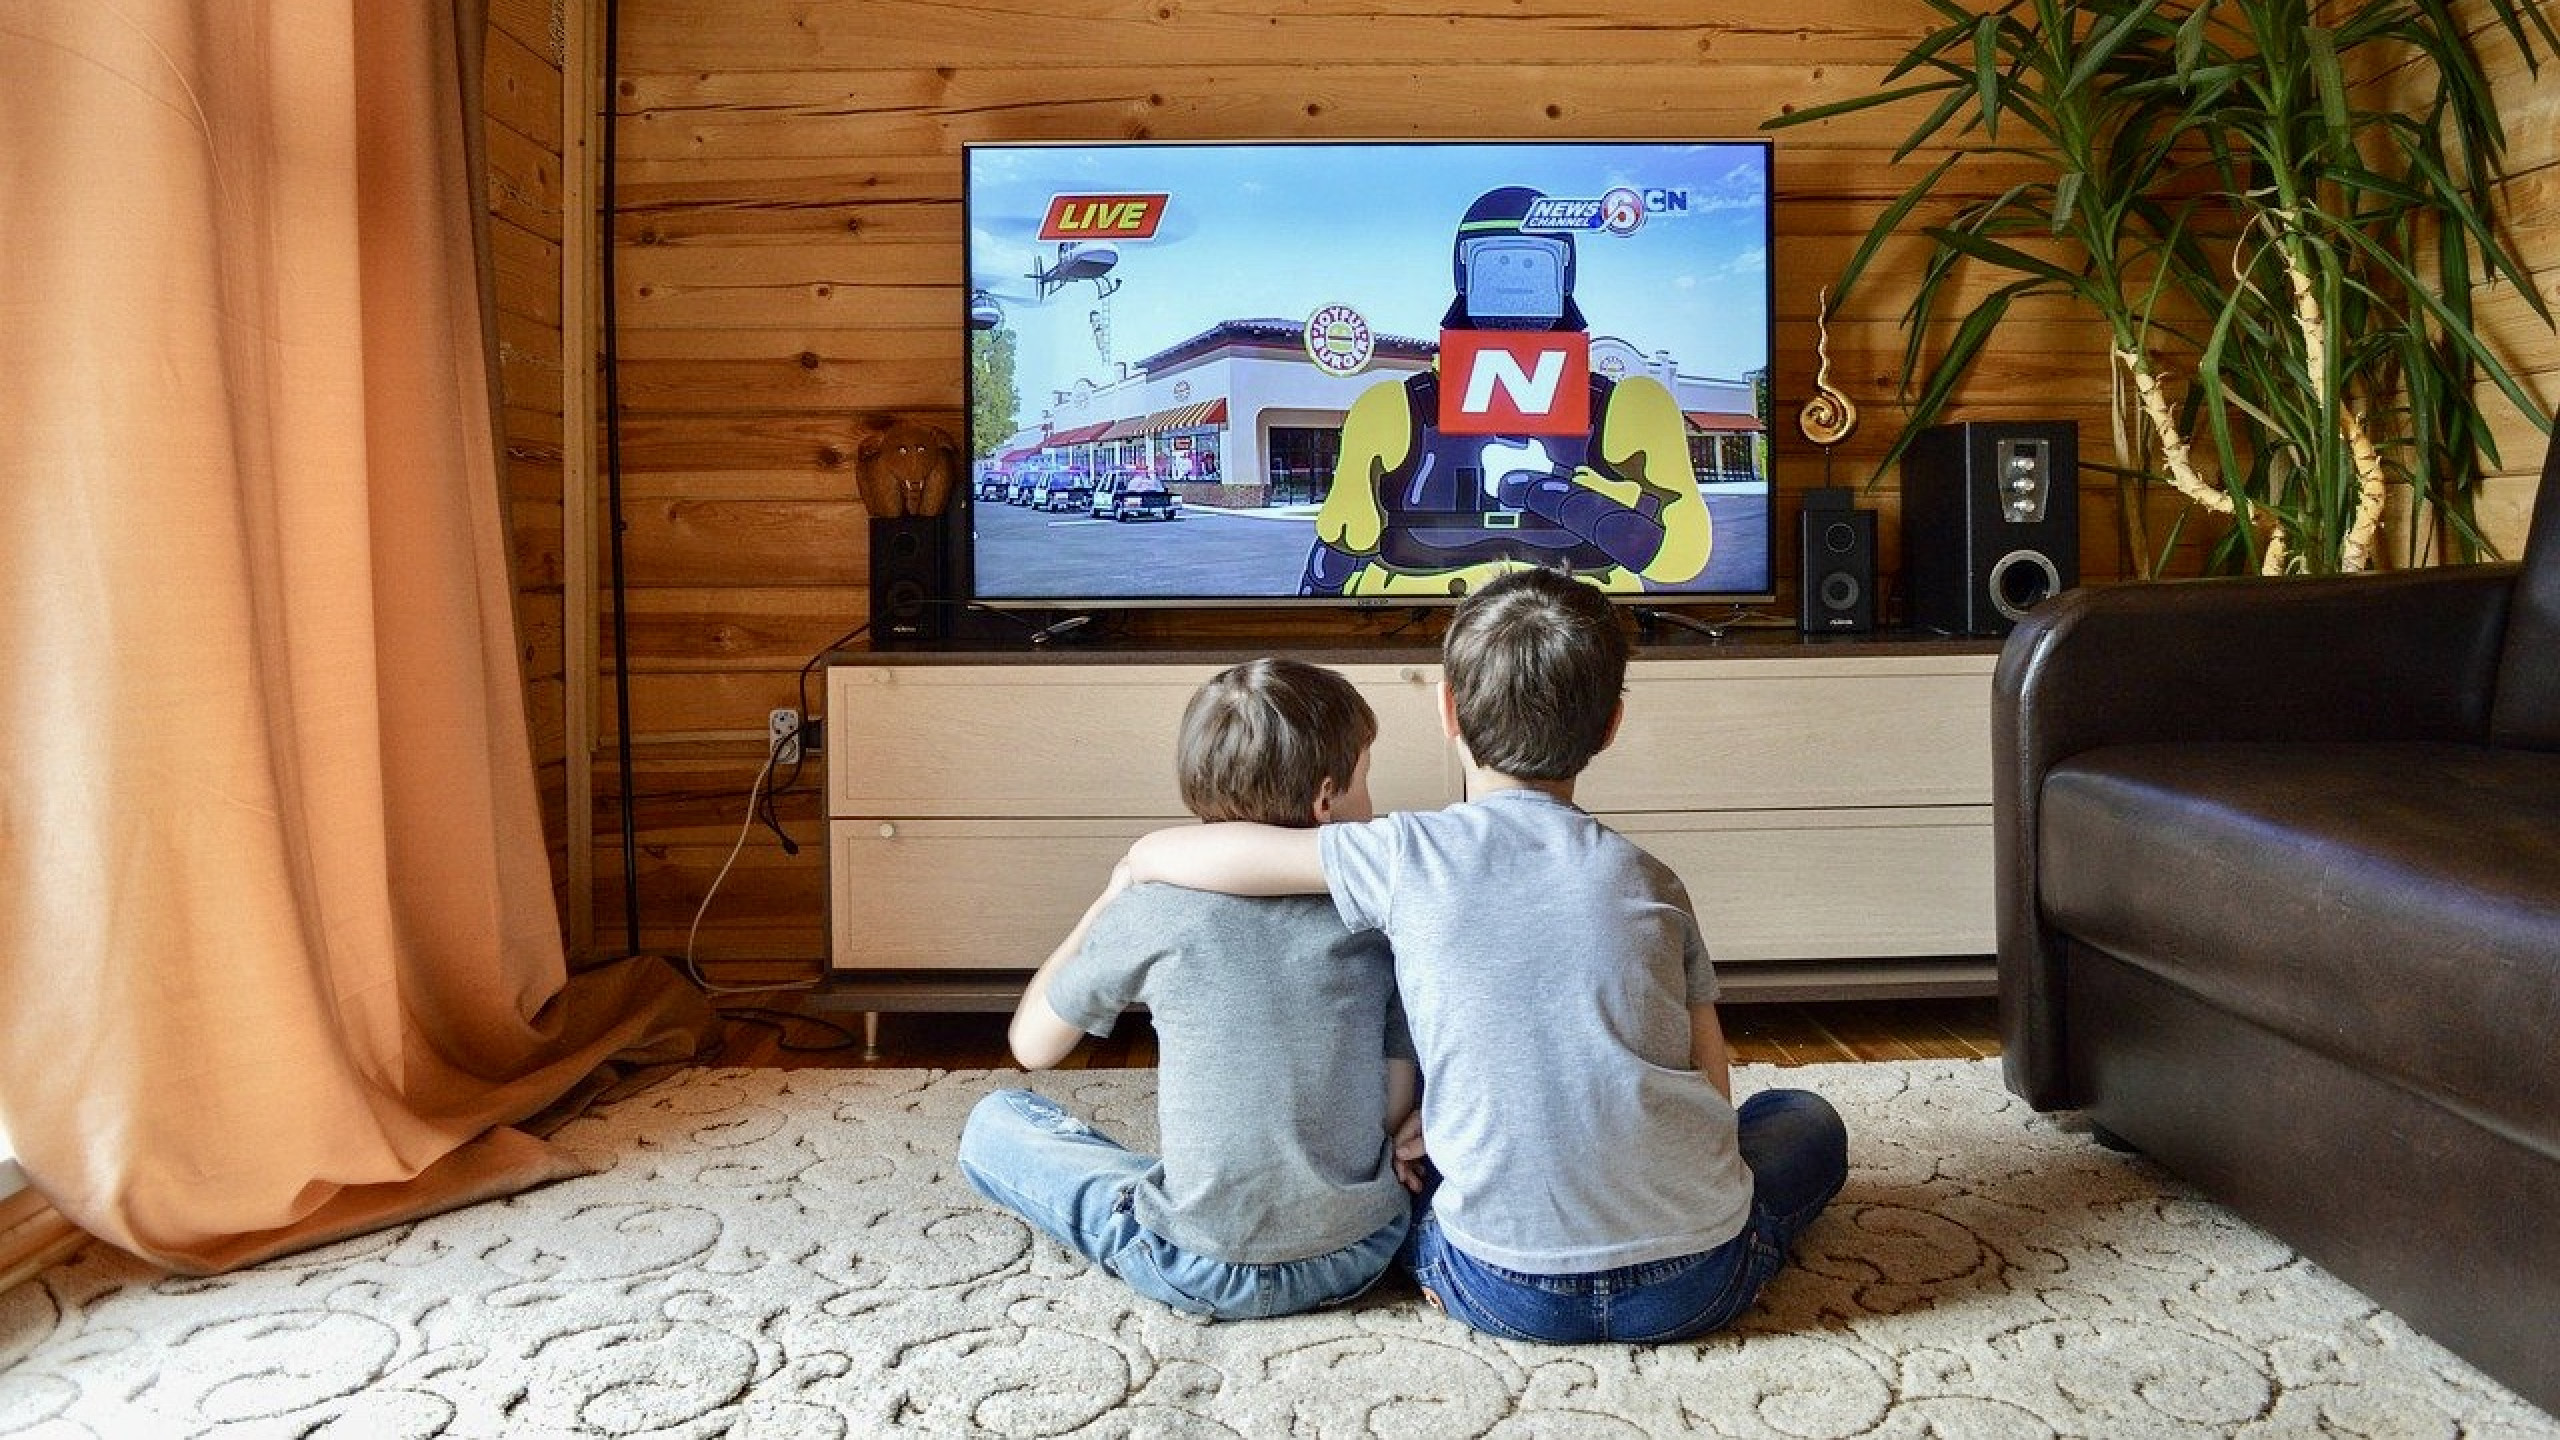 Россия просмотр просмотр телевизора. Телевизор для детей. Телевидение картинки. Дети смотрят телевизор.